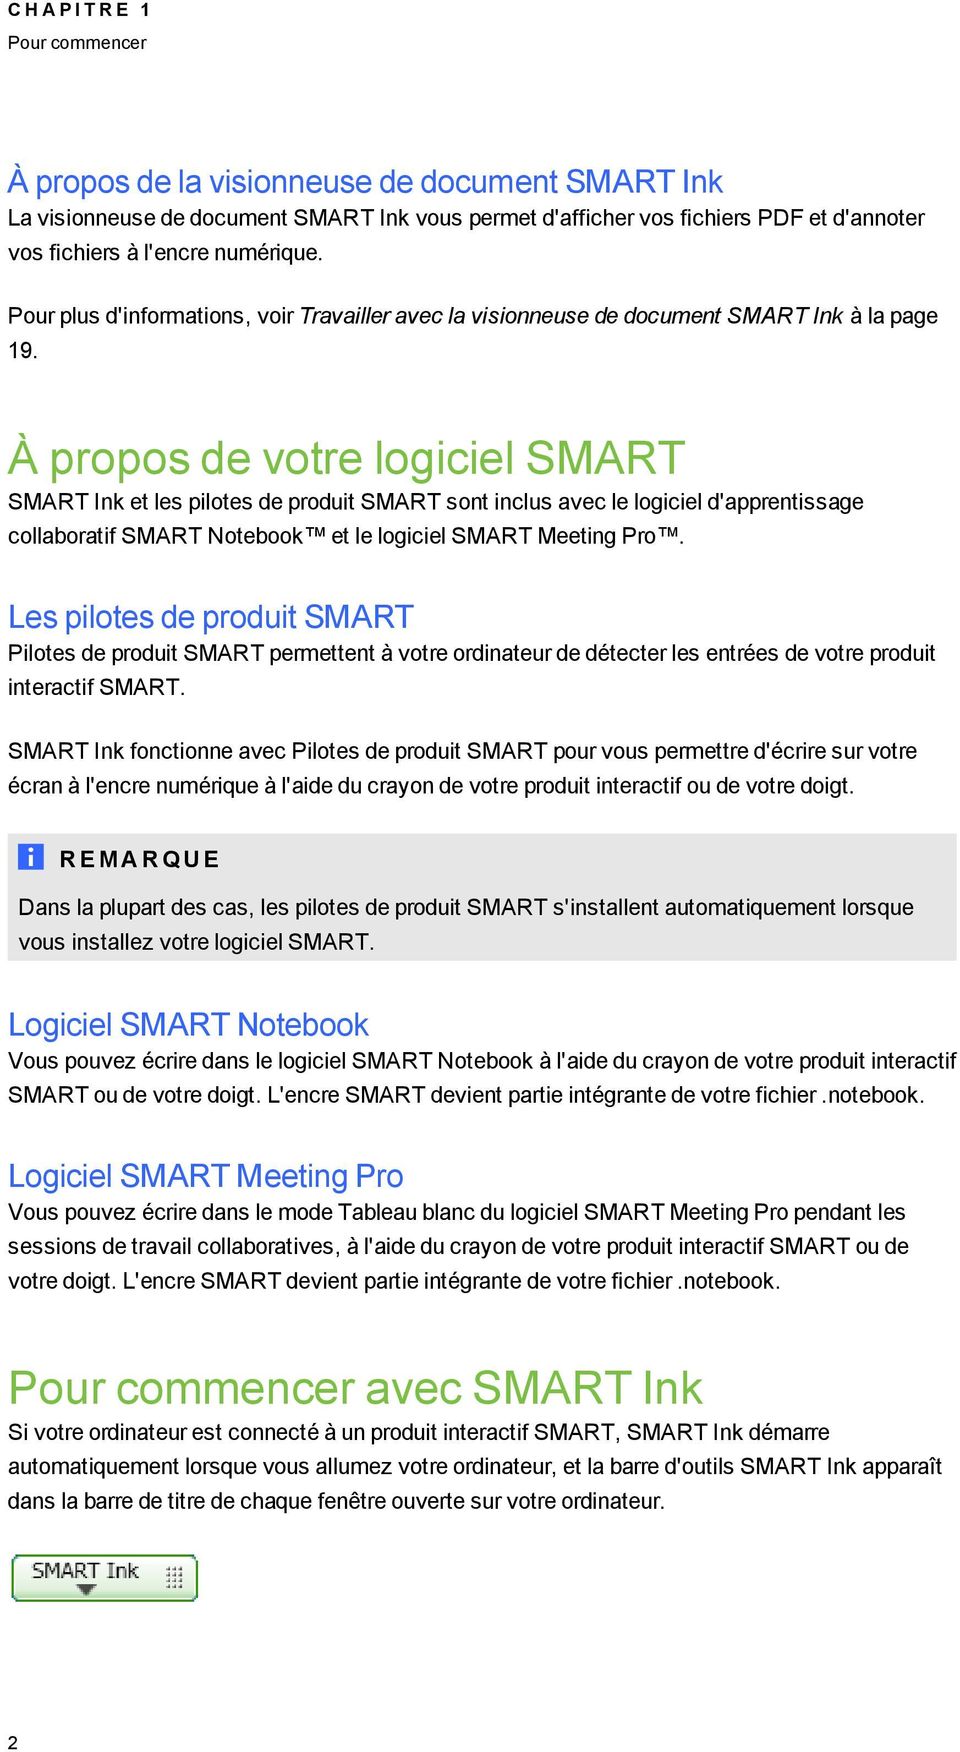 À propos de votre loiciel SMART SMART Ink et les pilotes de produit SMART sont inclus avec le loiciel d'apprentissae collaboratif SMART Notebook et le loiciel SMART Meetin Pro.